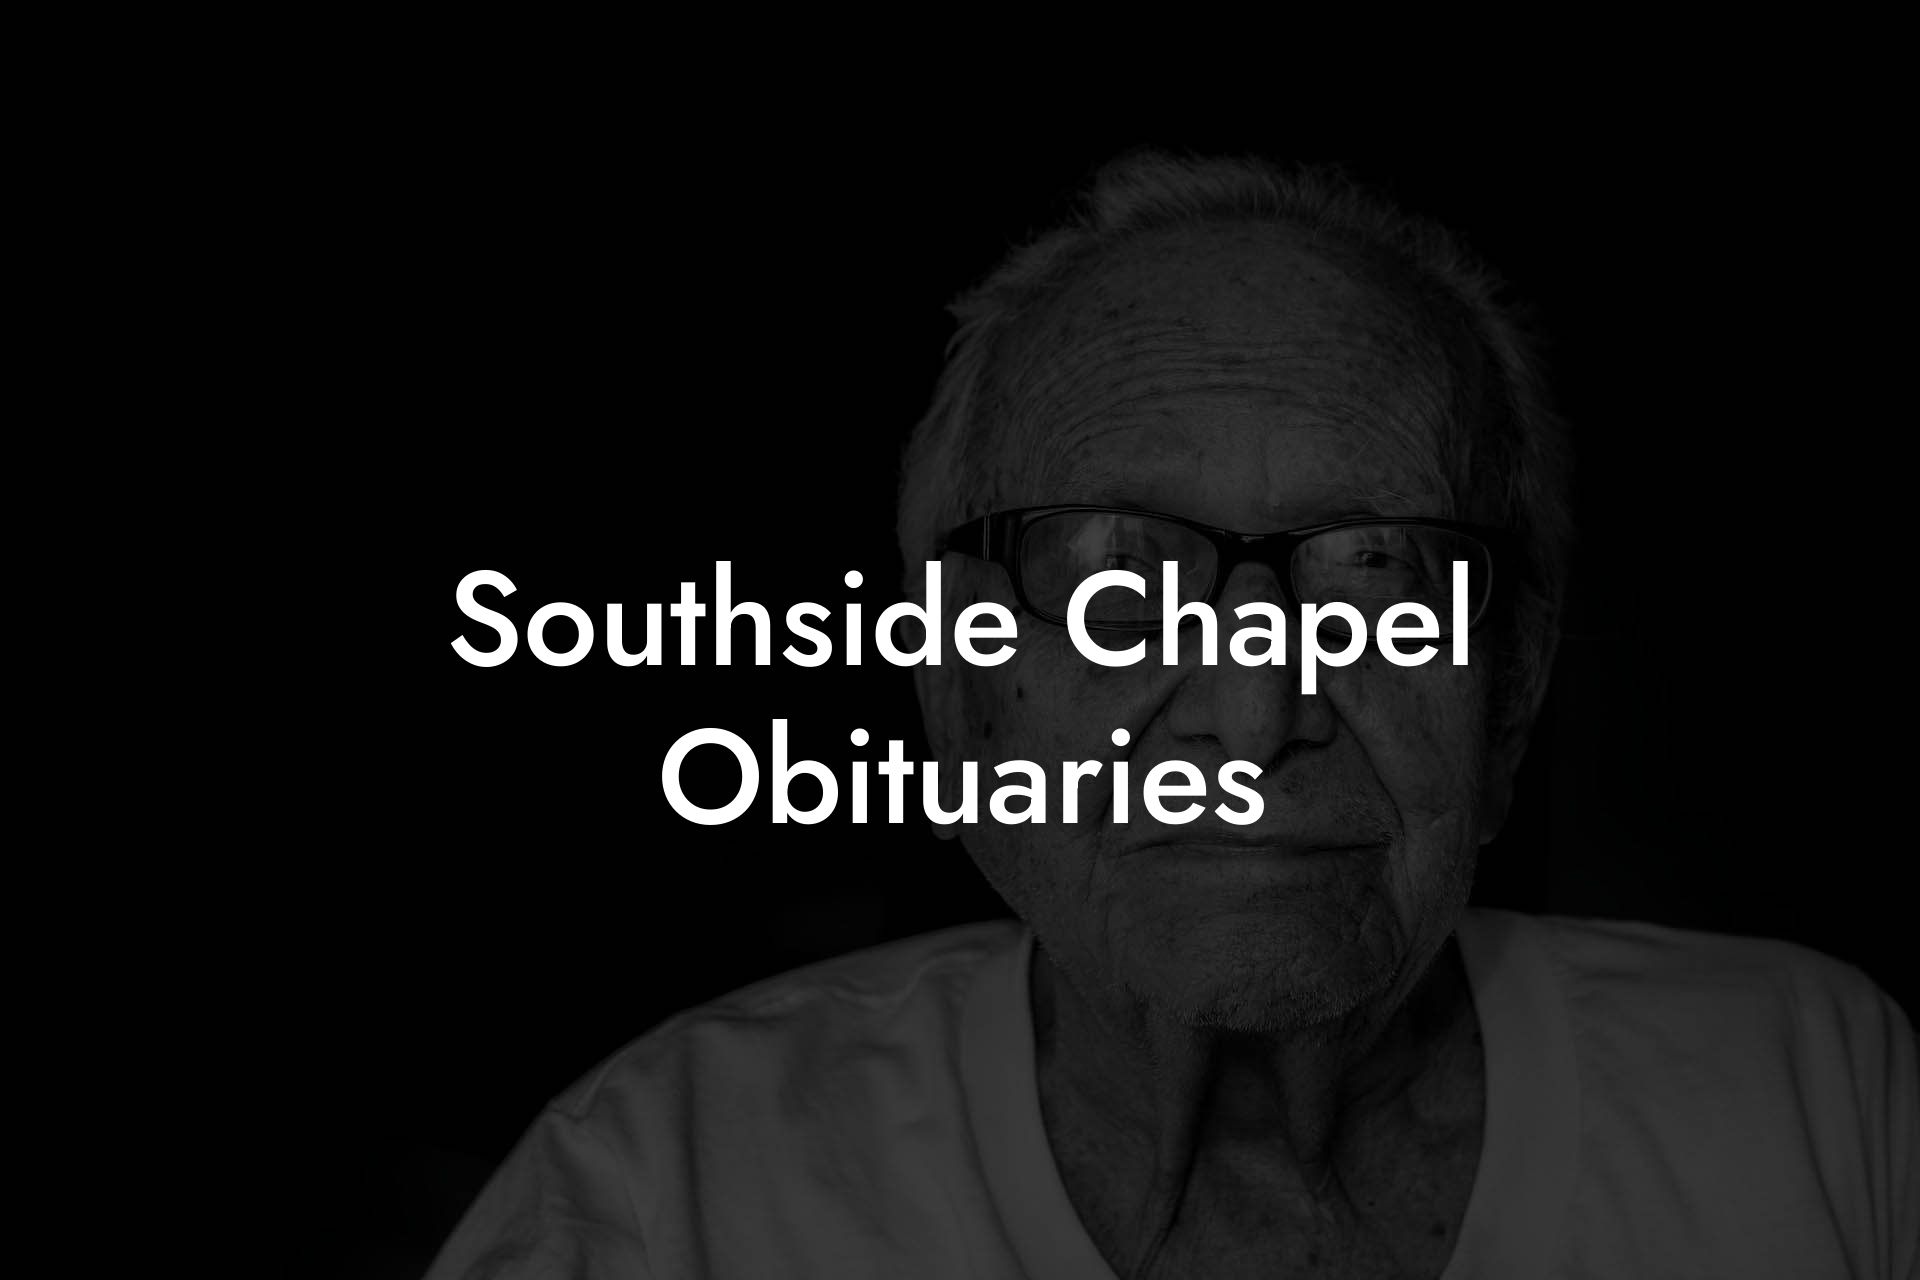 Southside Chapel Obituaries